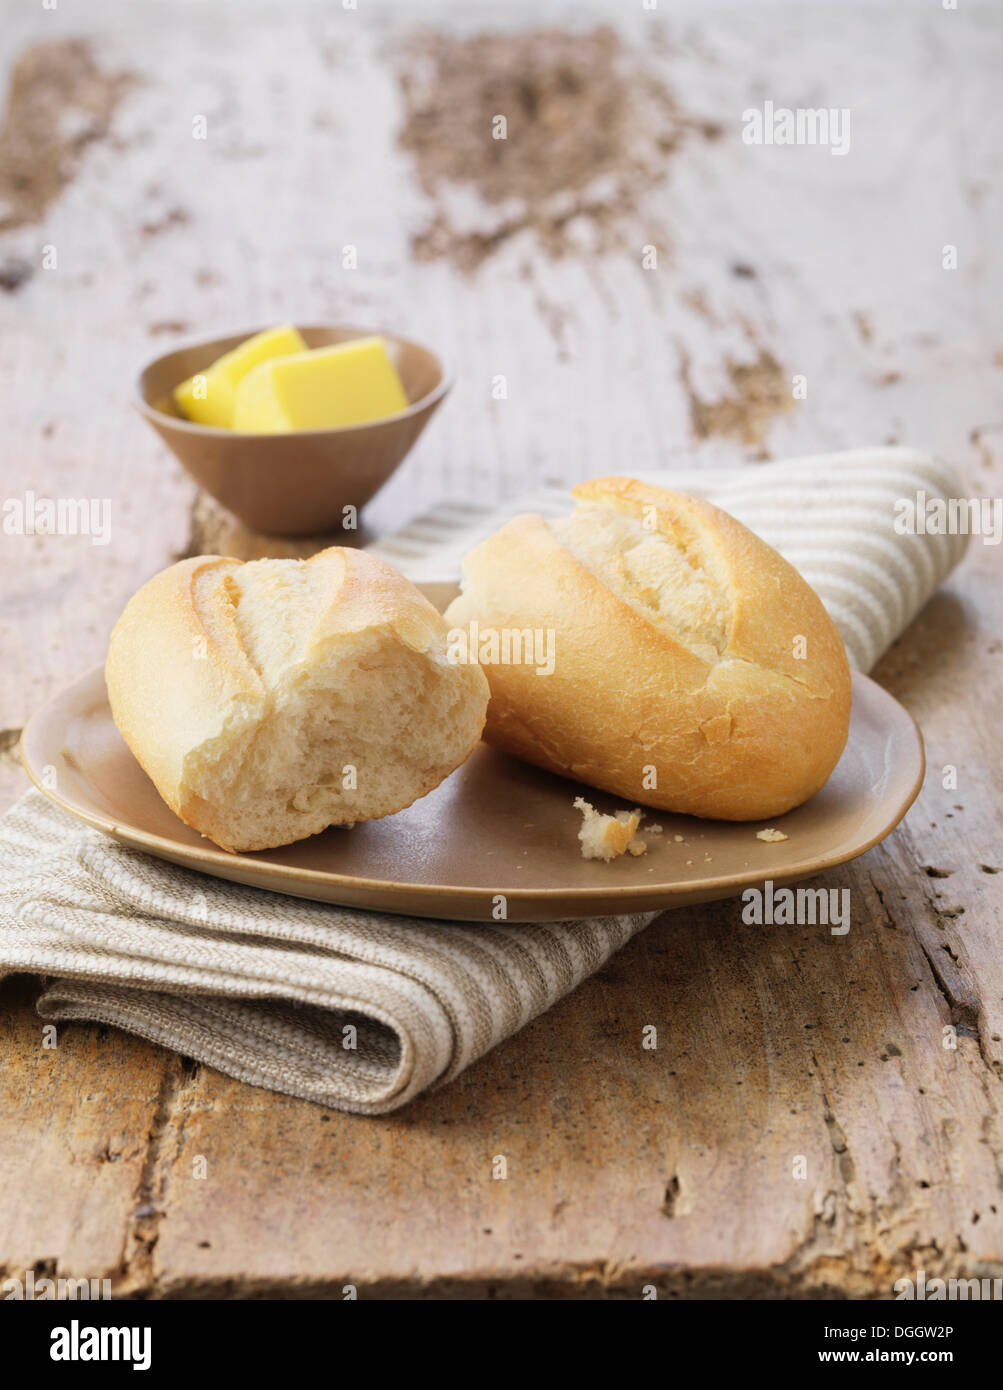 Petit pain blanc avec du beurre sur une plaque en céramique et serviette à rayures Banque D'Images